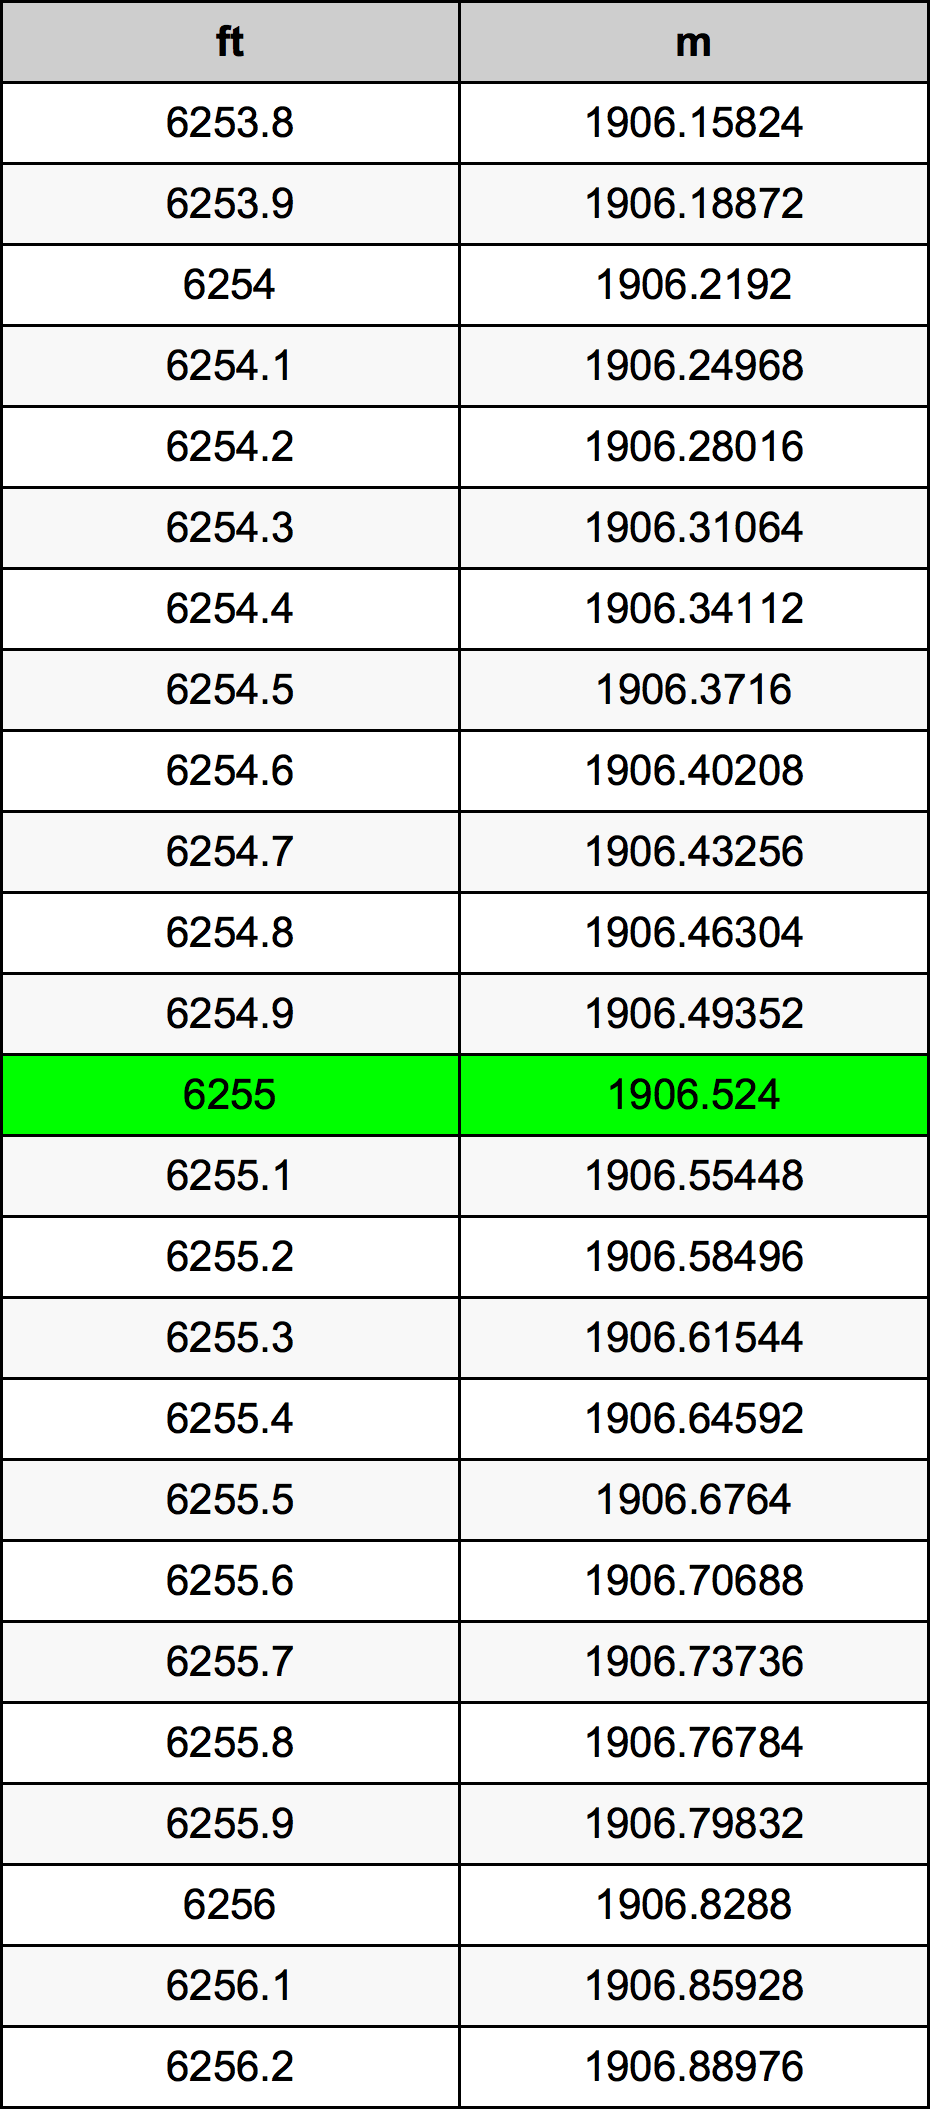 6255 Pied table de conversion